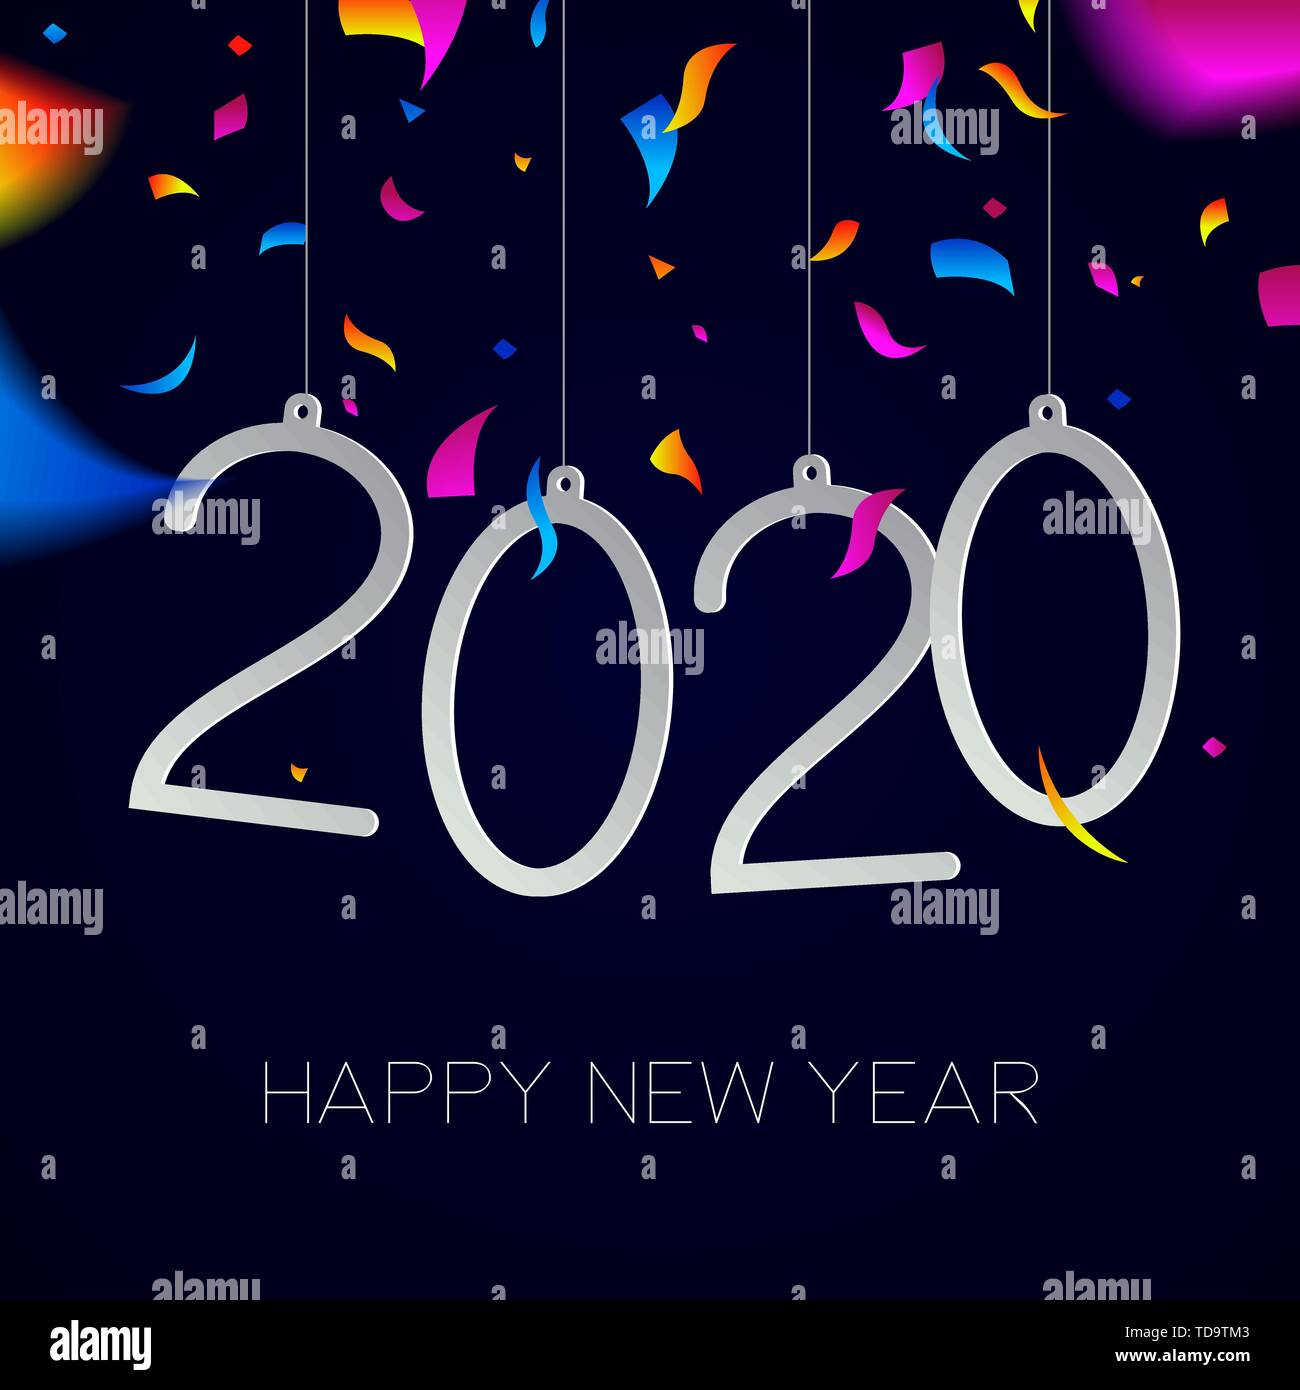 Frohes Neues Jahr 2020 Grußkarte Abbildung mit Urlaub Angebot und Party Konfetti Explosion. Stock Vektor